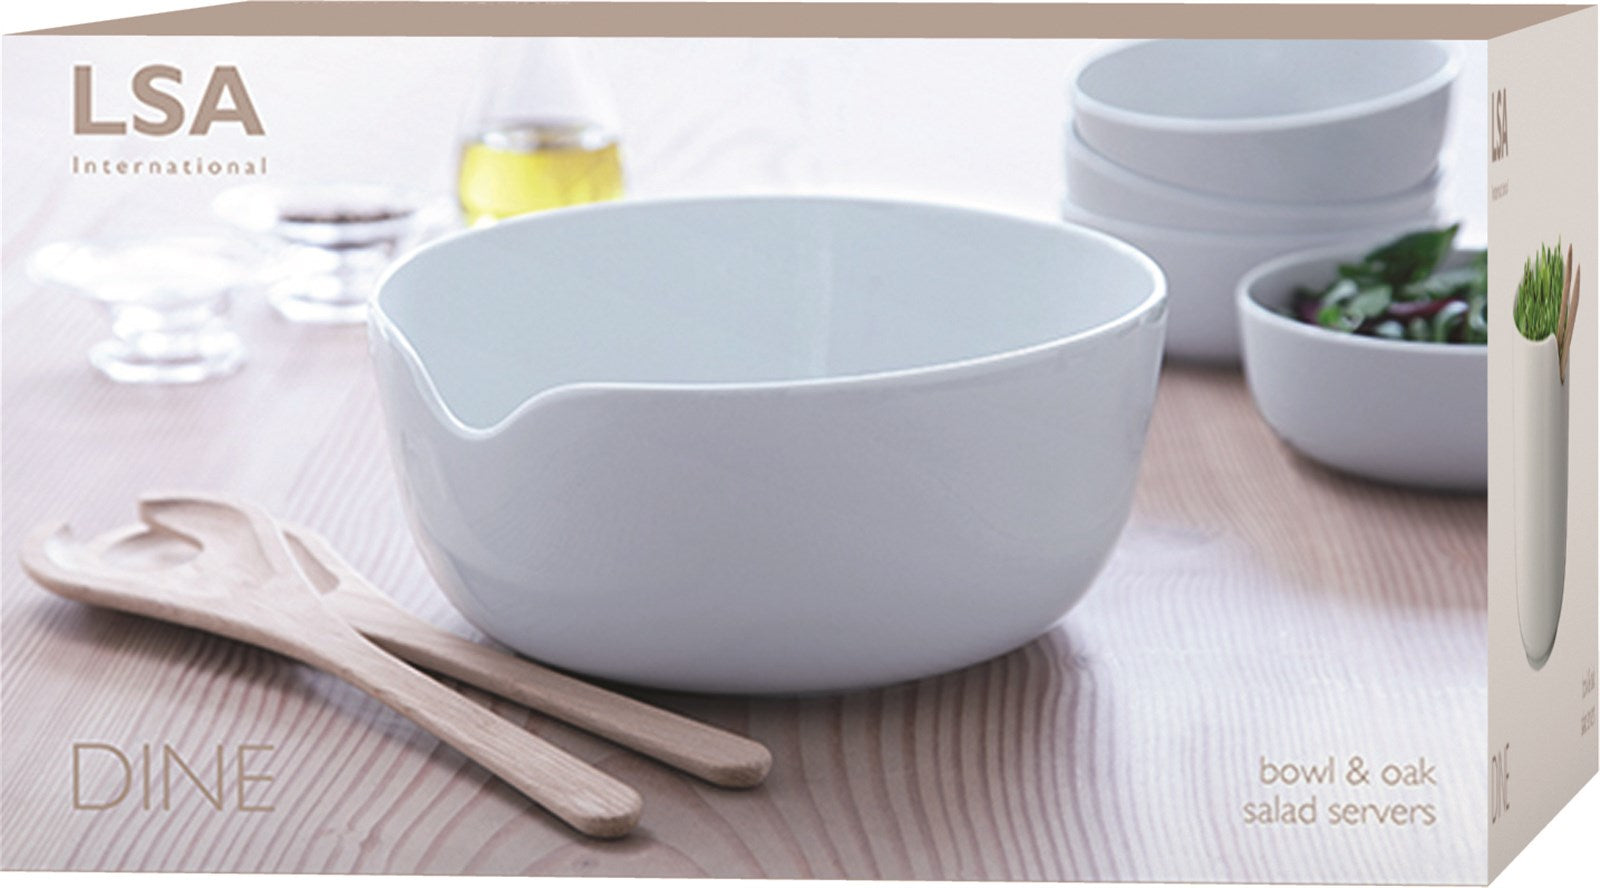 Dine Salatschüssel mit Eichen-Besteck Ø24cm - KAQTU Design